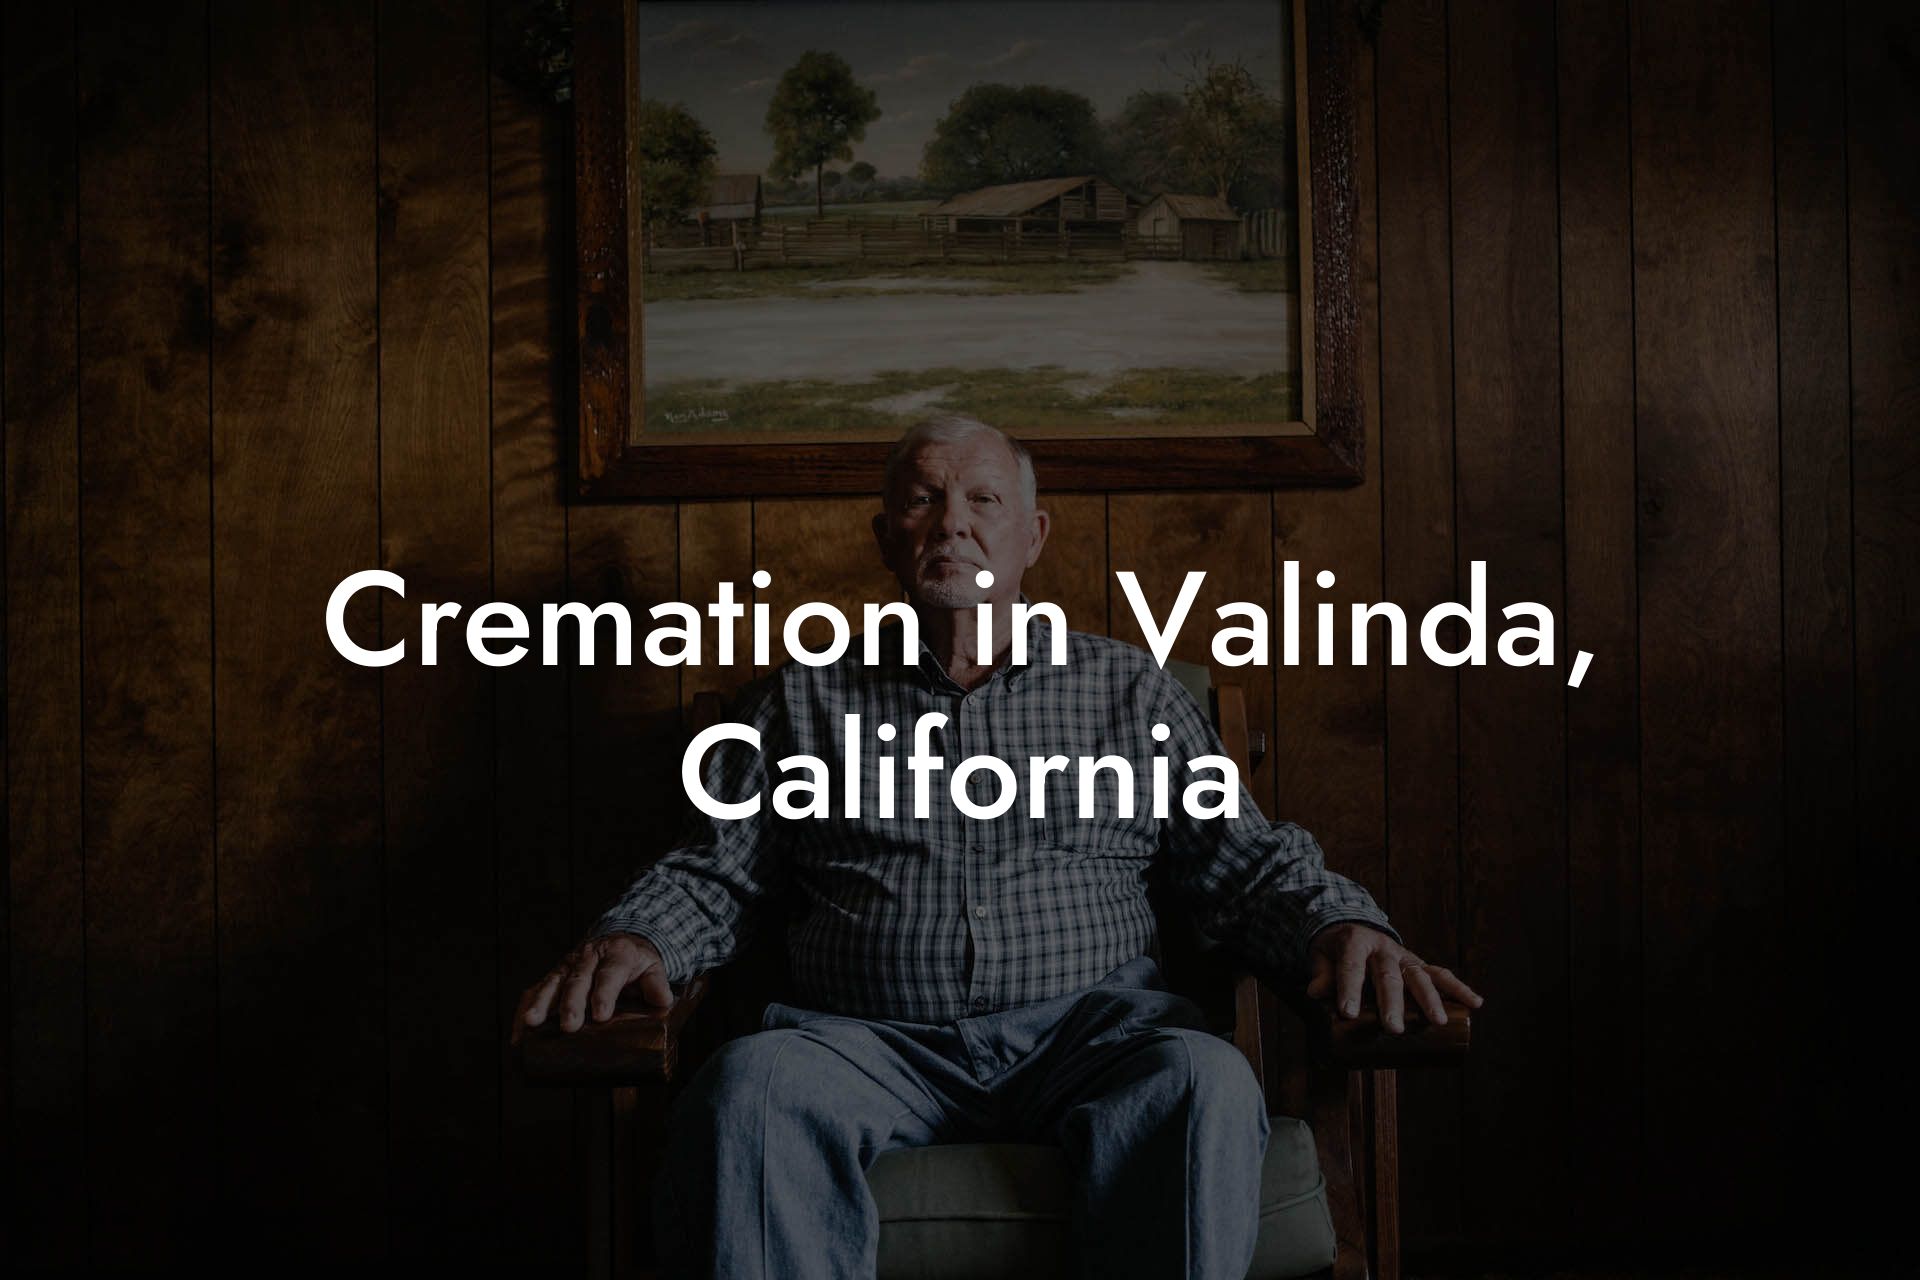 Cremation in Valinda, California